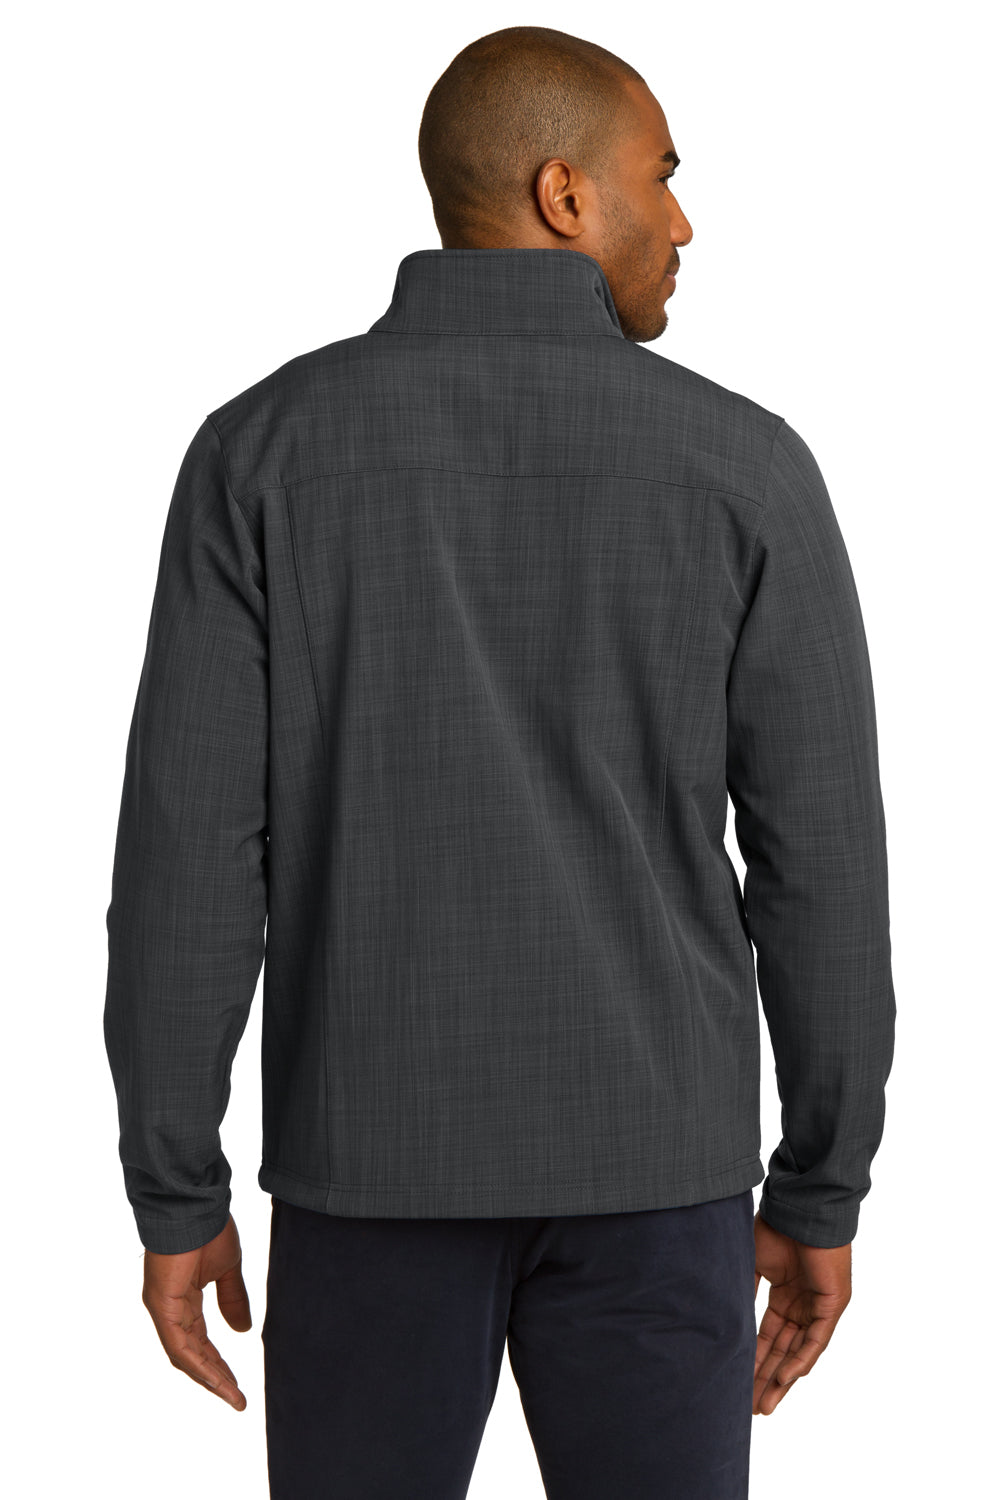 Eddie Bauer EB532 Mens Shaded Crosshatch Wind & Water Resistant Full Zip Jacket Grey Model Back